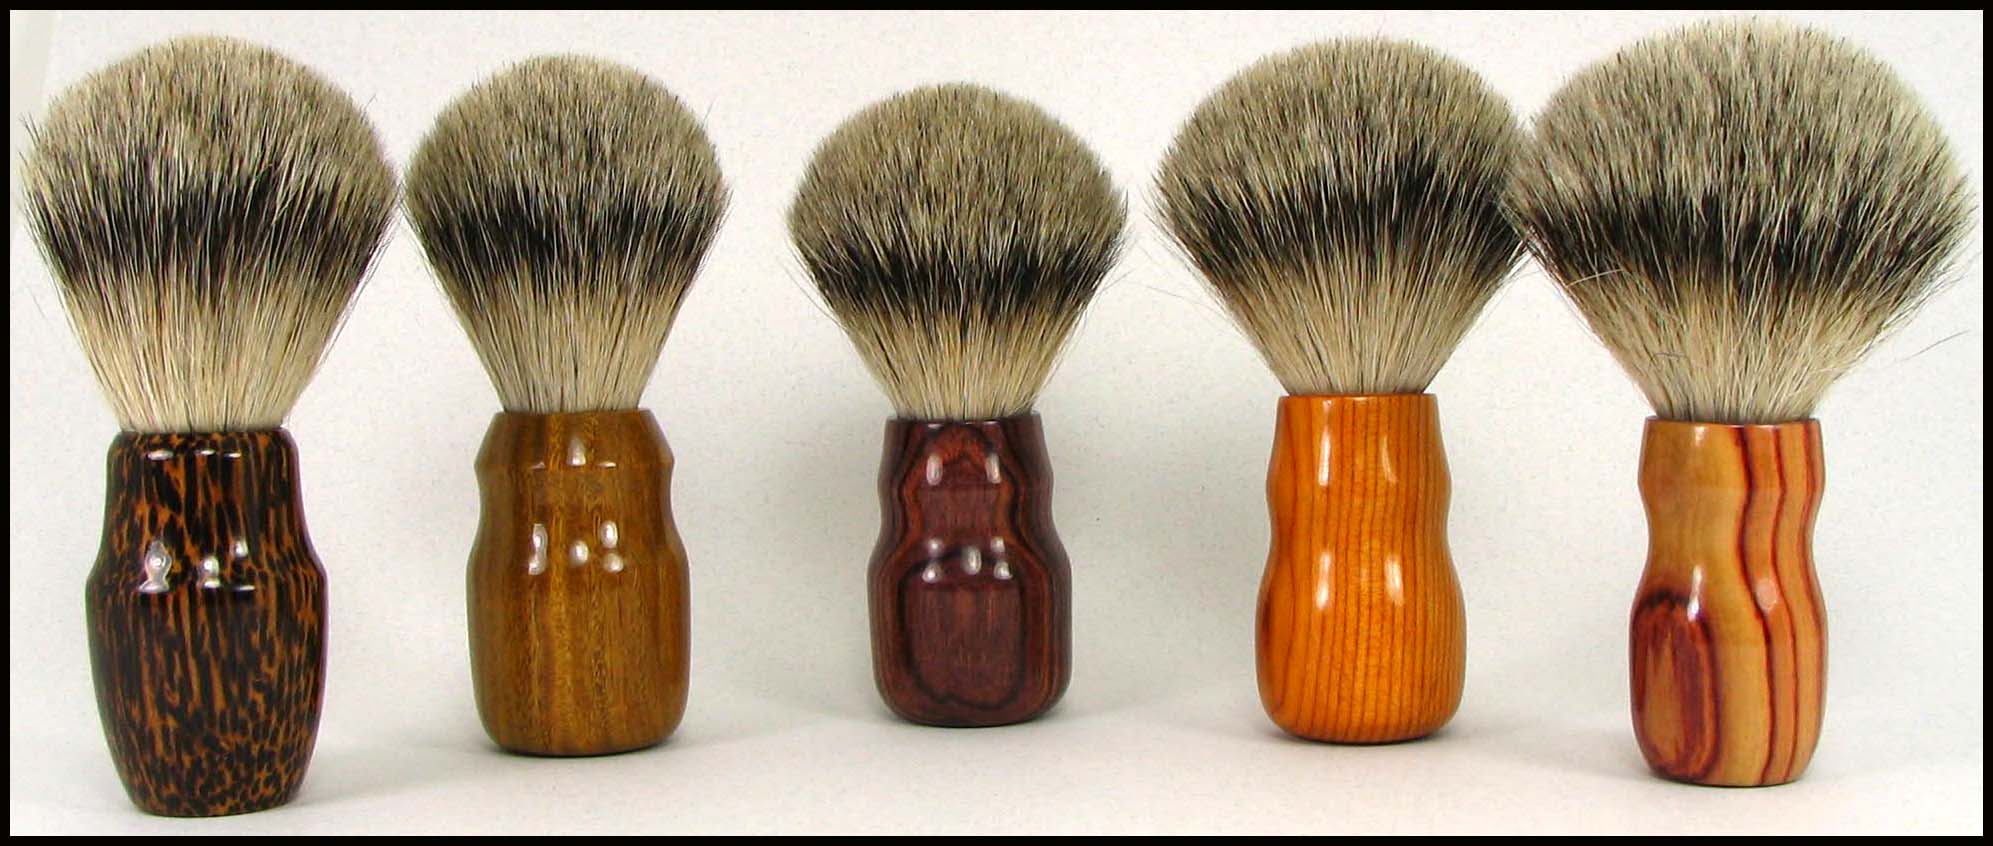 shaving brushes - badger hair